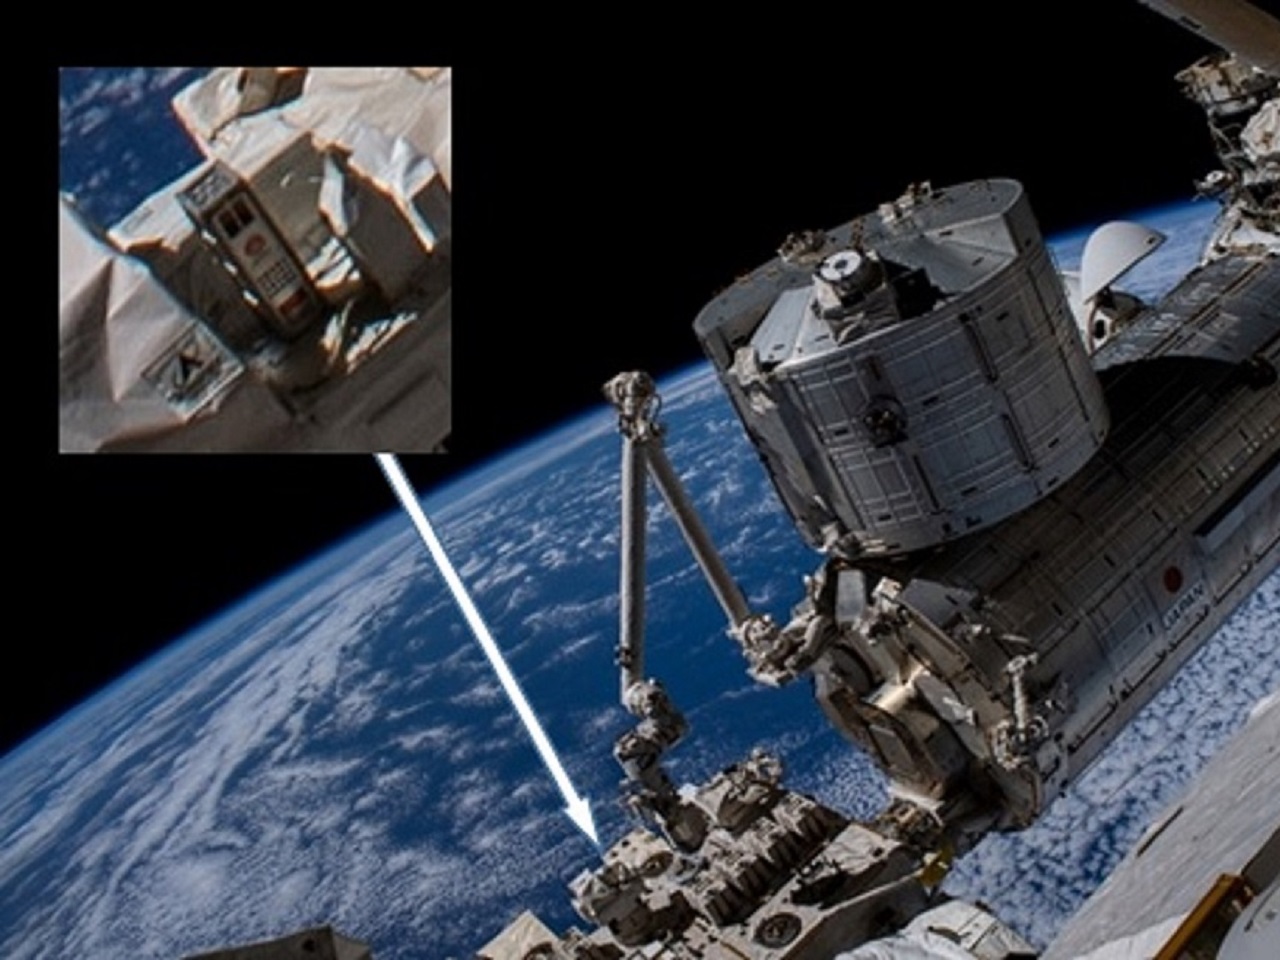 2024年打ち上げ予定「木造人工衛星」素材はホオノキに--10カ月の曝露実験で確認